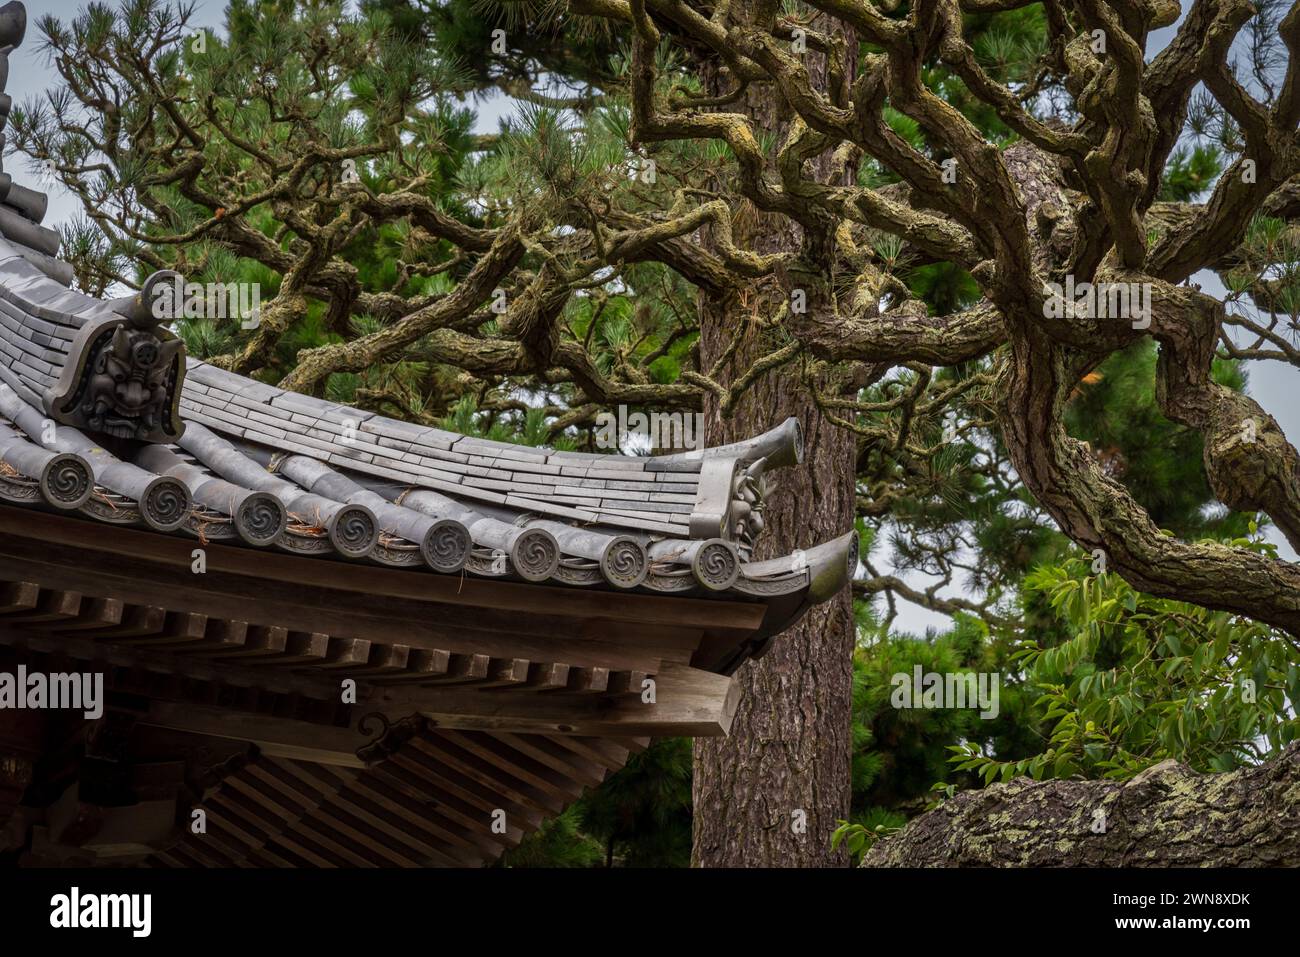 Üppige Vegetation und farbenfrohe Architektur des Japanischen Teegartens im Golden Gate Park, San Francisco, Kalifornien. Stockfoto